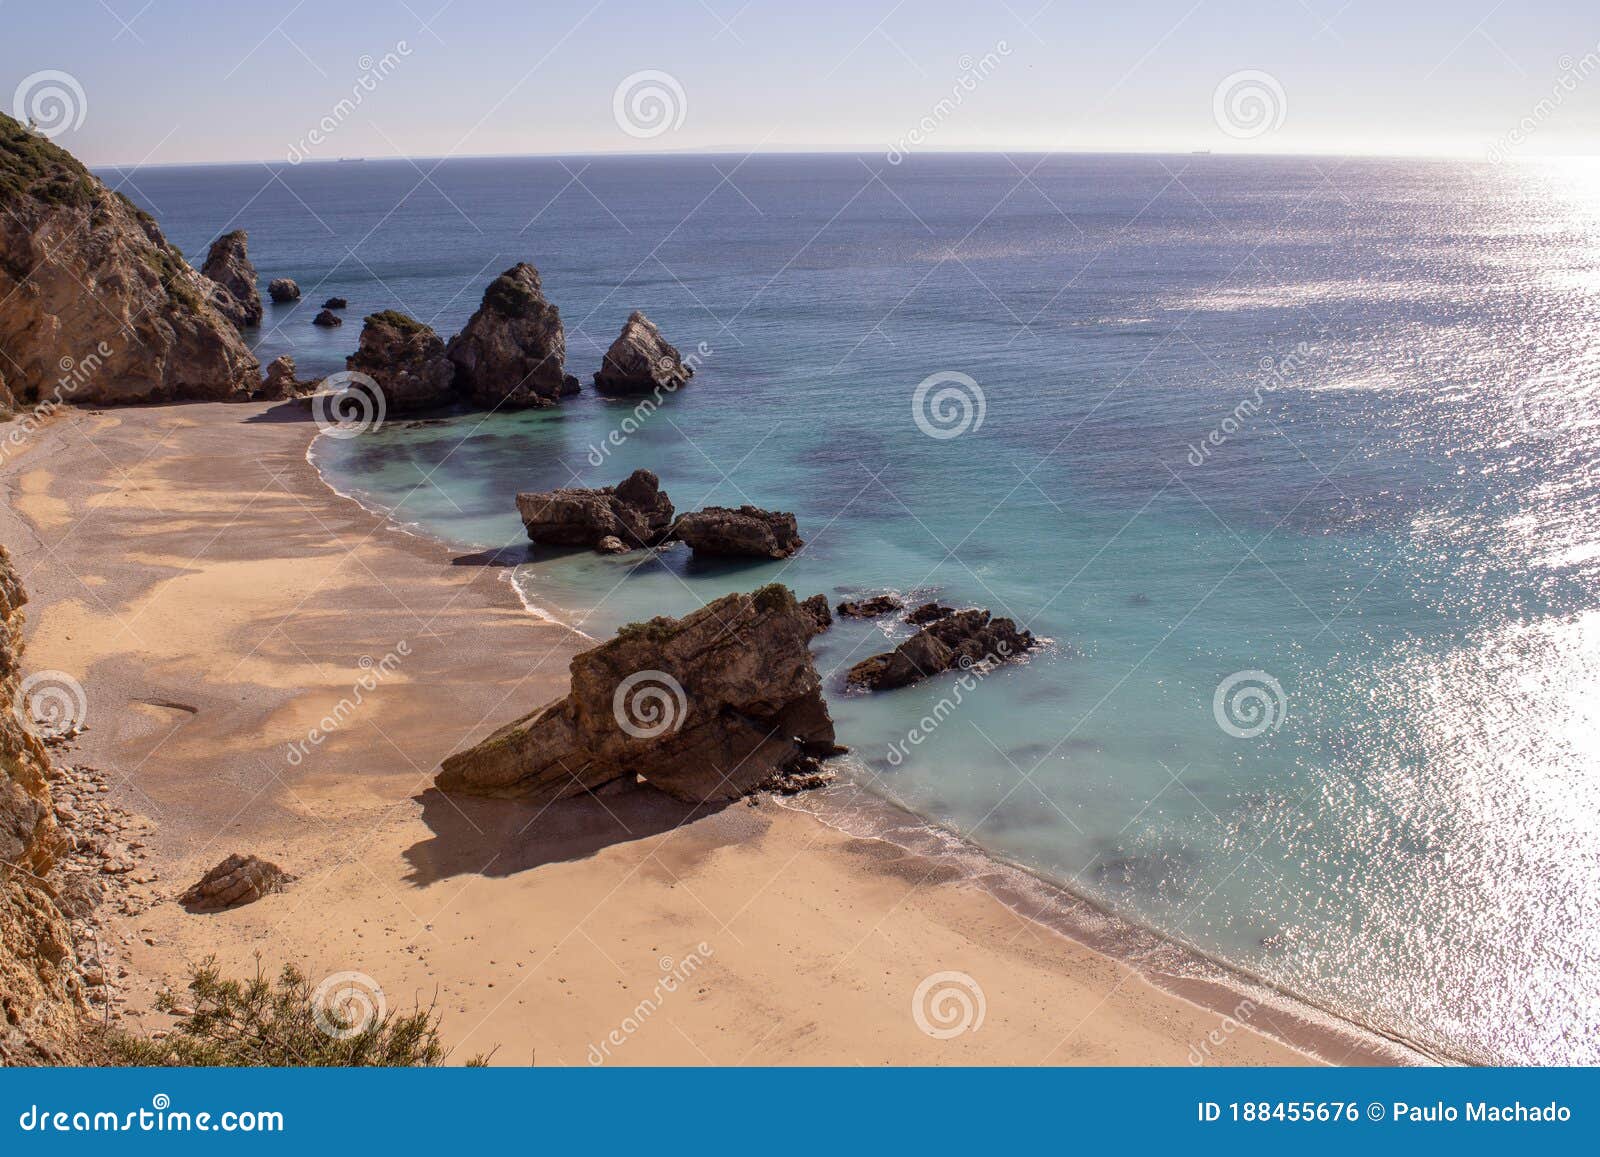 praia ribeira do cavalo, a hidden beach of crystal clear blue waters near the town of sesimbra